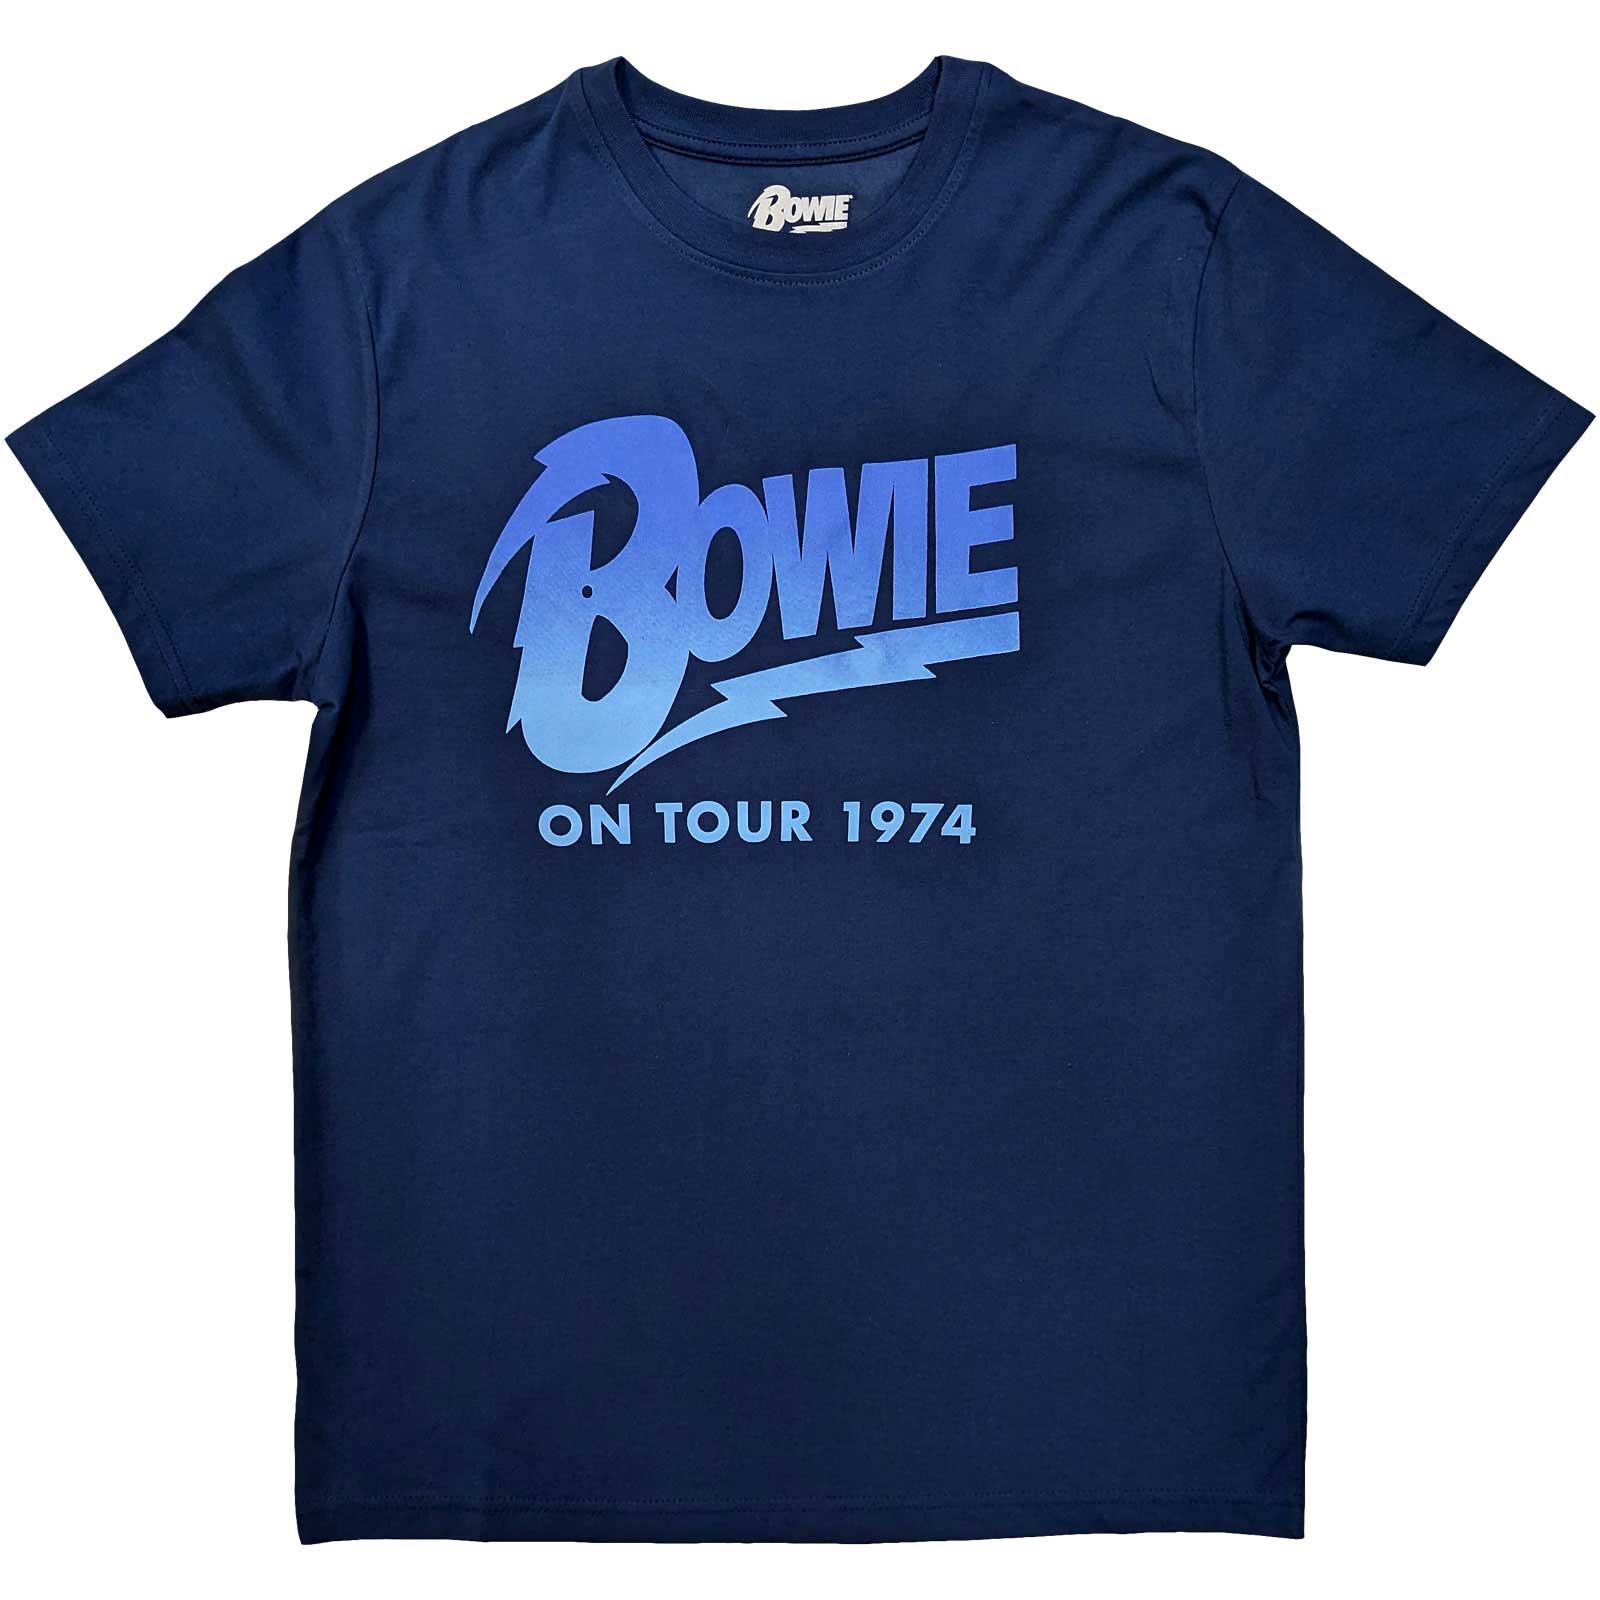 DAVID BOWIE On Tour 1974